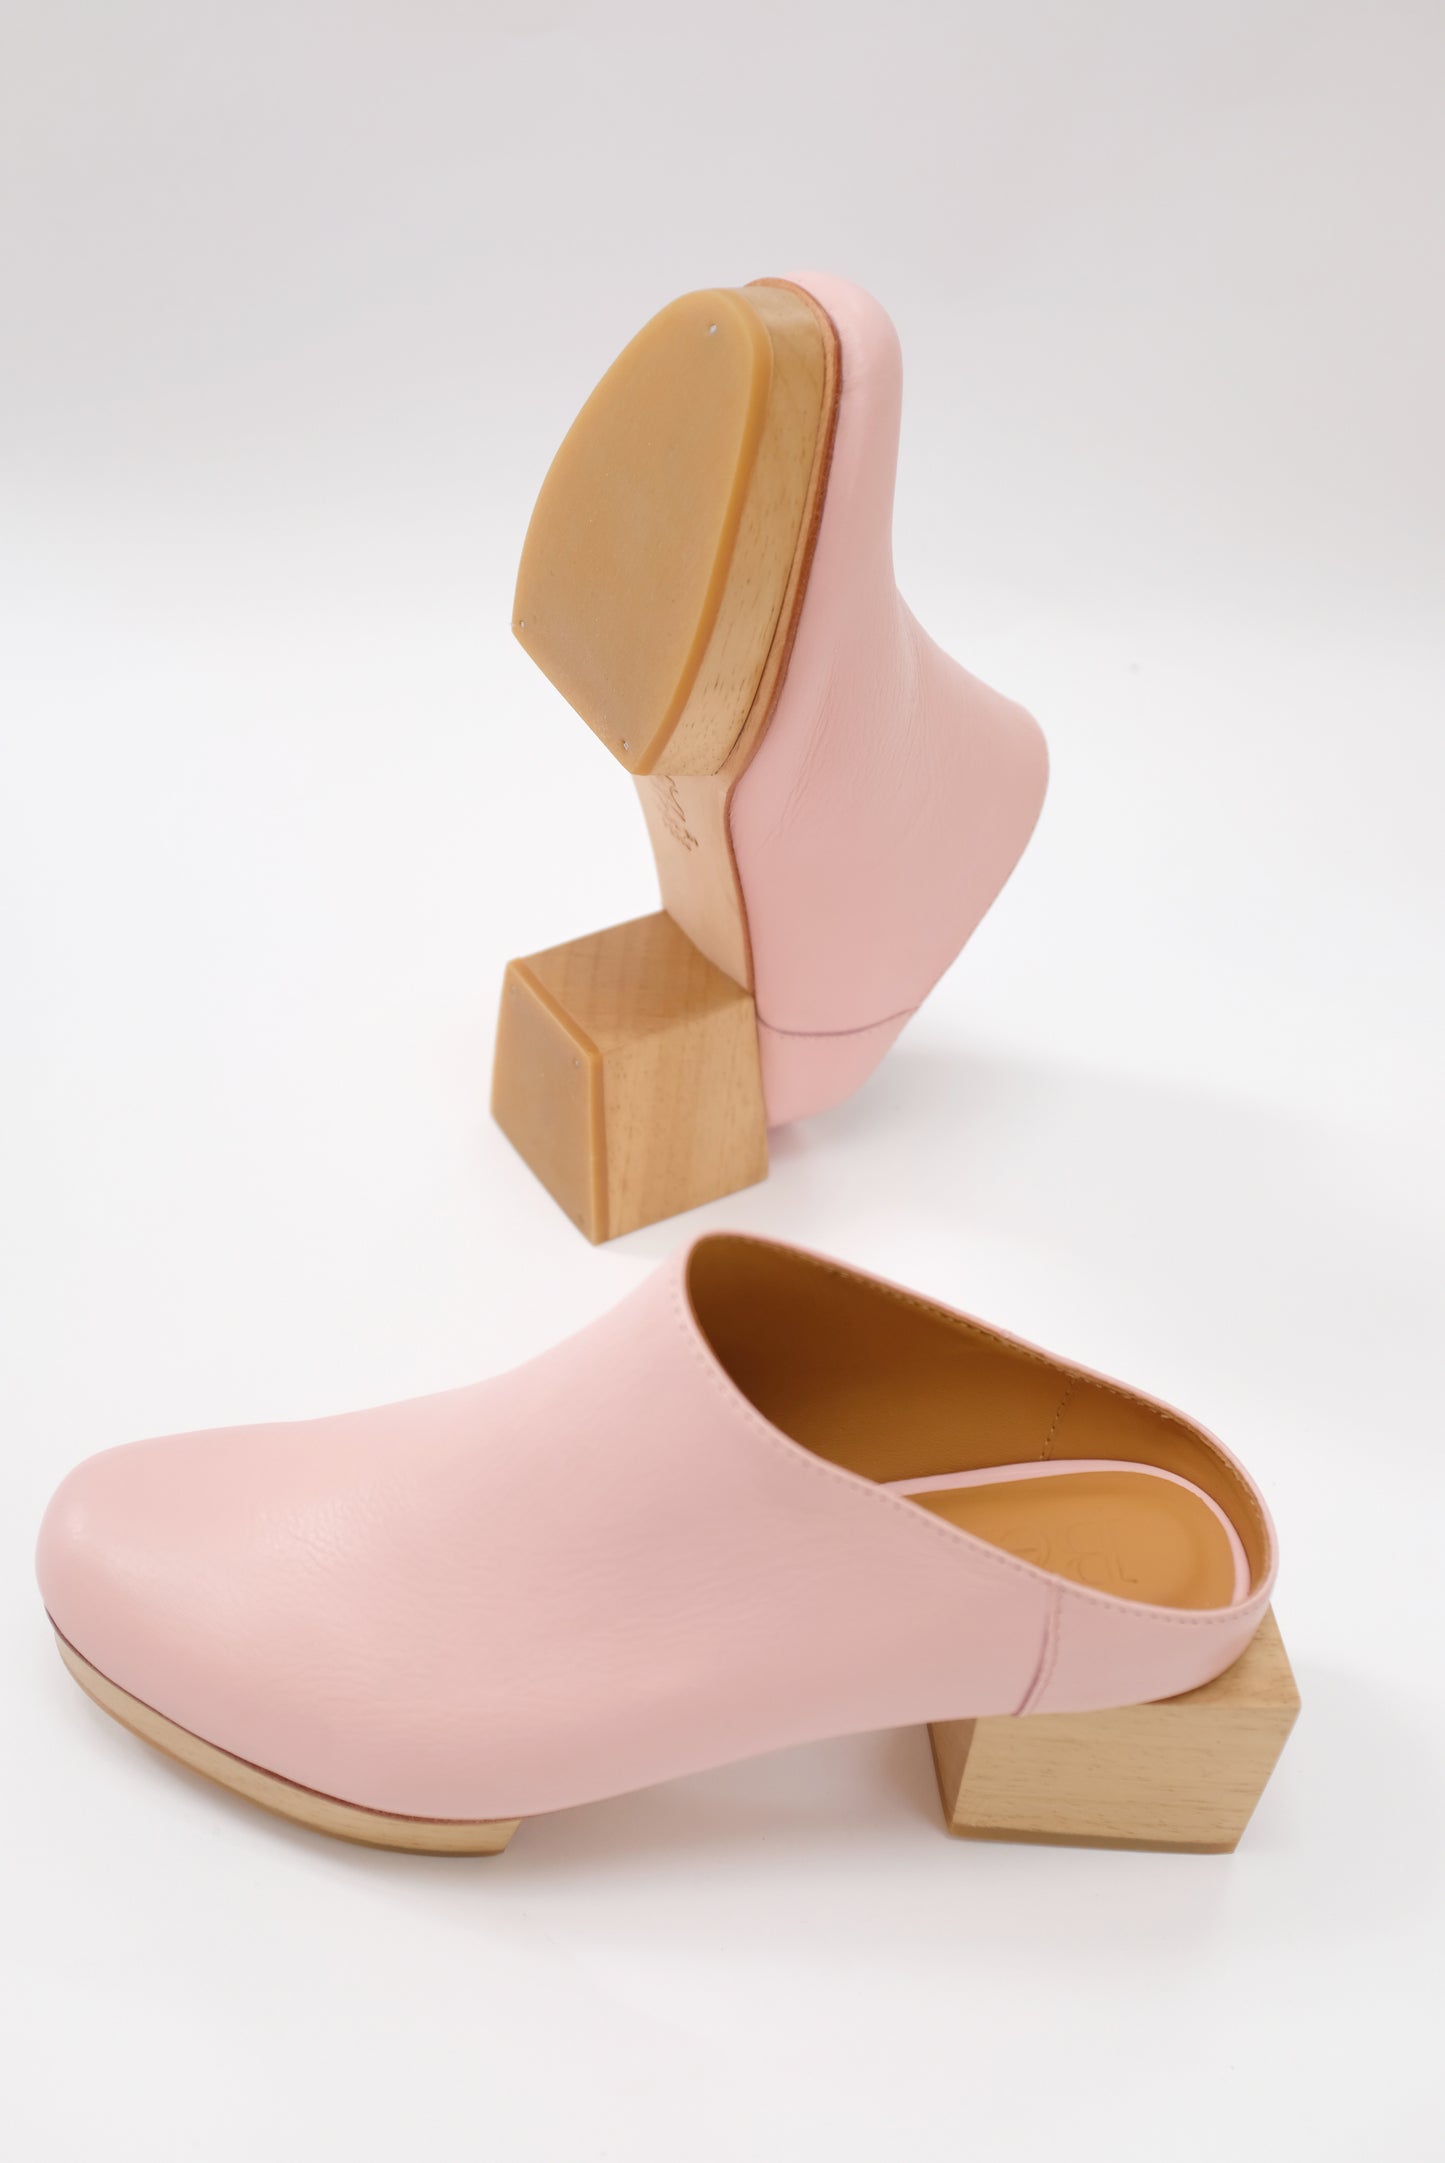 Beklina Matisse Platform Mules Pastel Pink